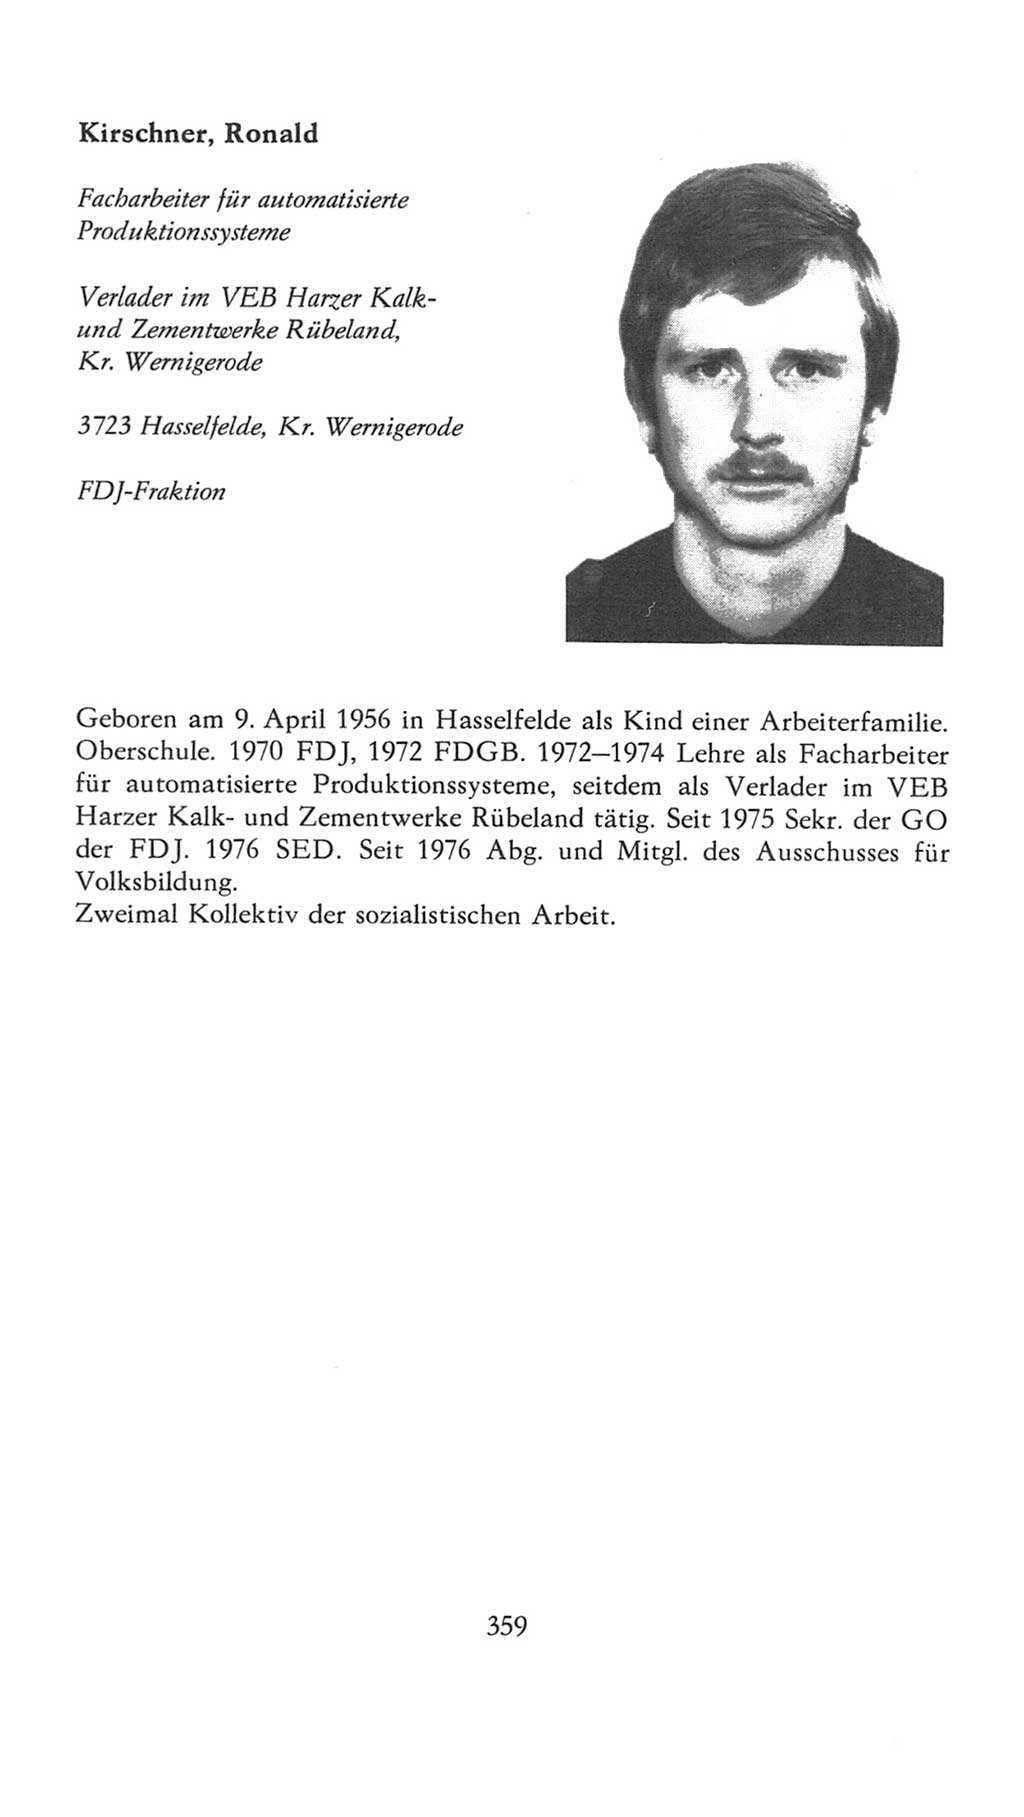 Volkskammer (VK) der Deutschen Demokratischen Republik (DDR), 7. Wahlperiode 1976-1981, Seite 359 (VK. DDR 7. WP. 1976-1981, S. 359)